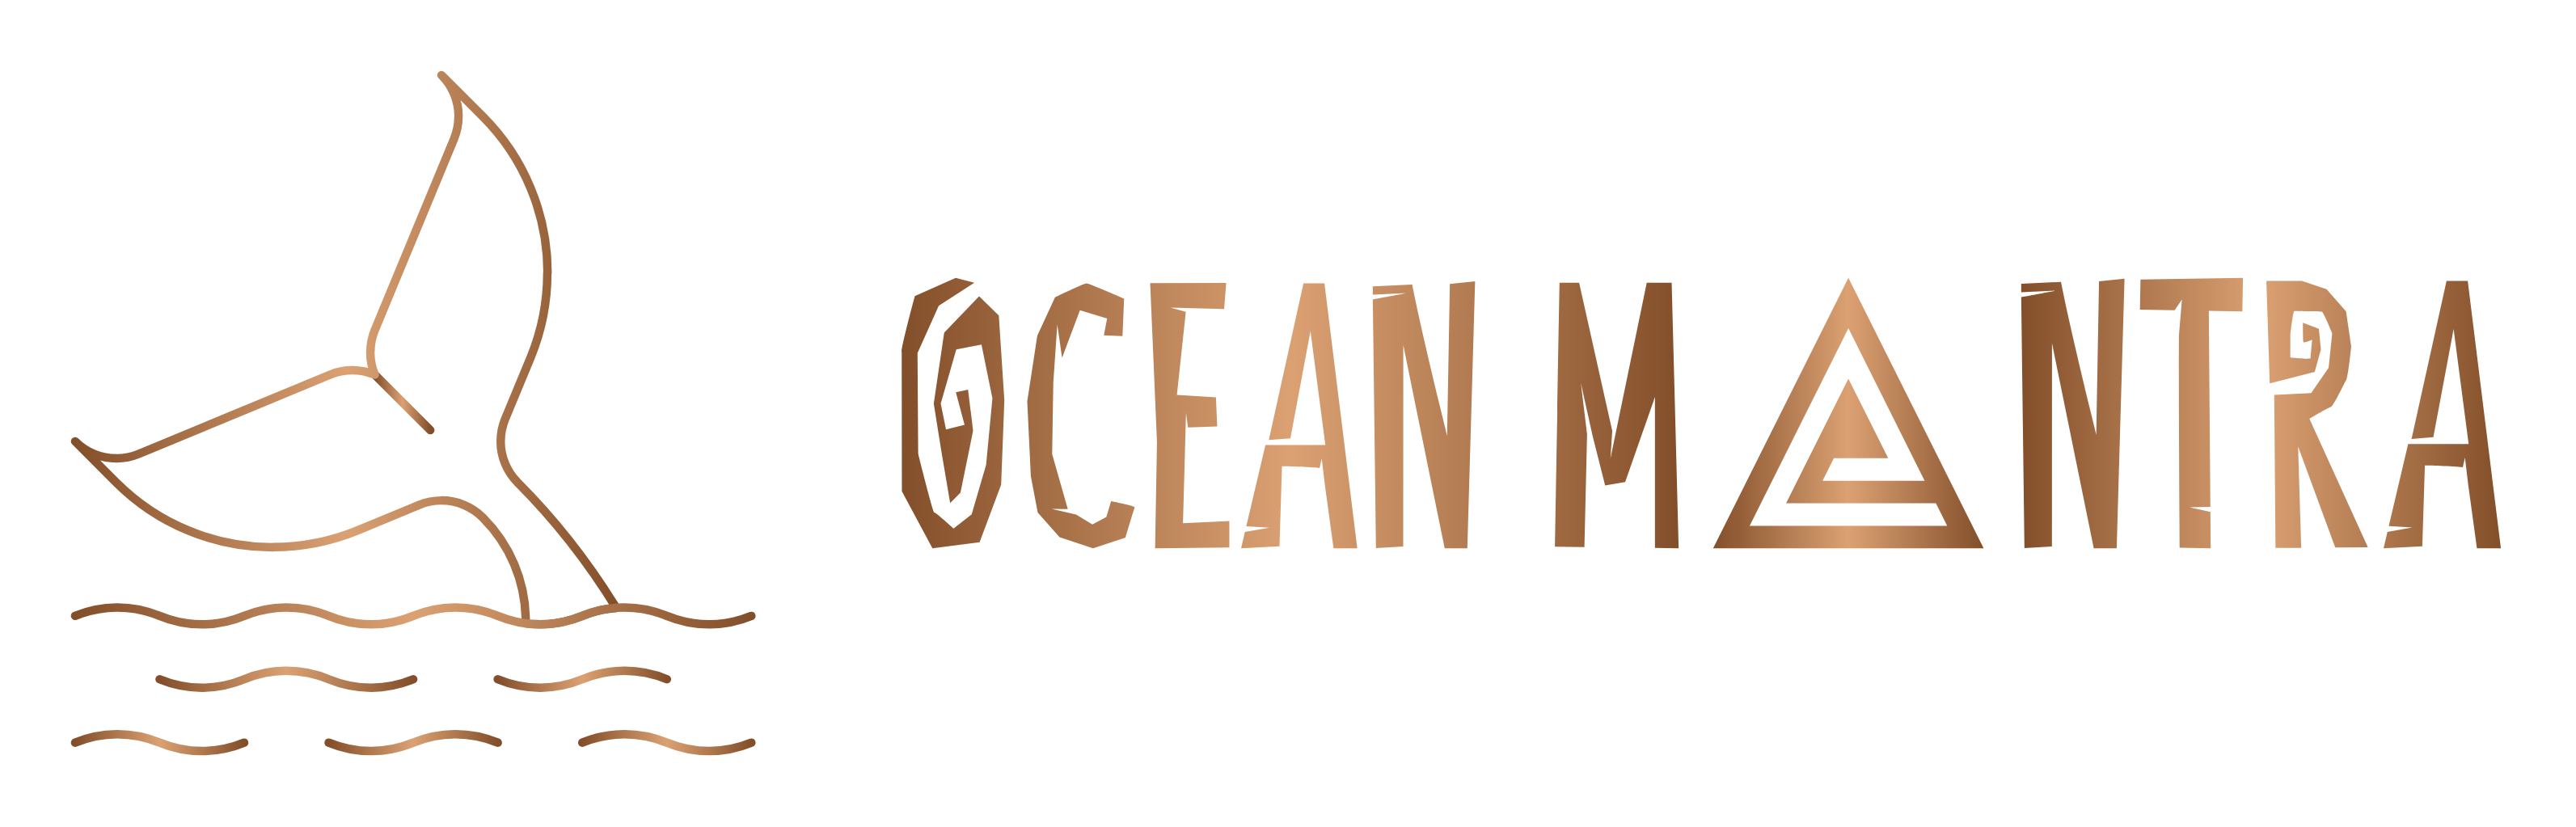 Ocean Mantra Village